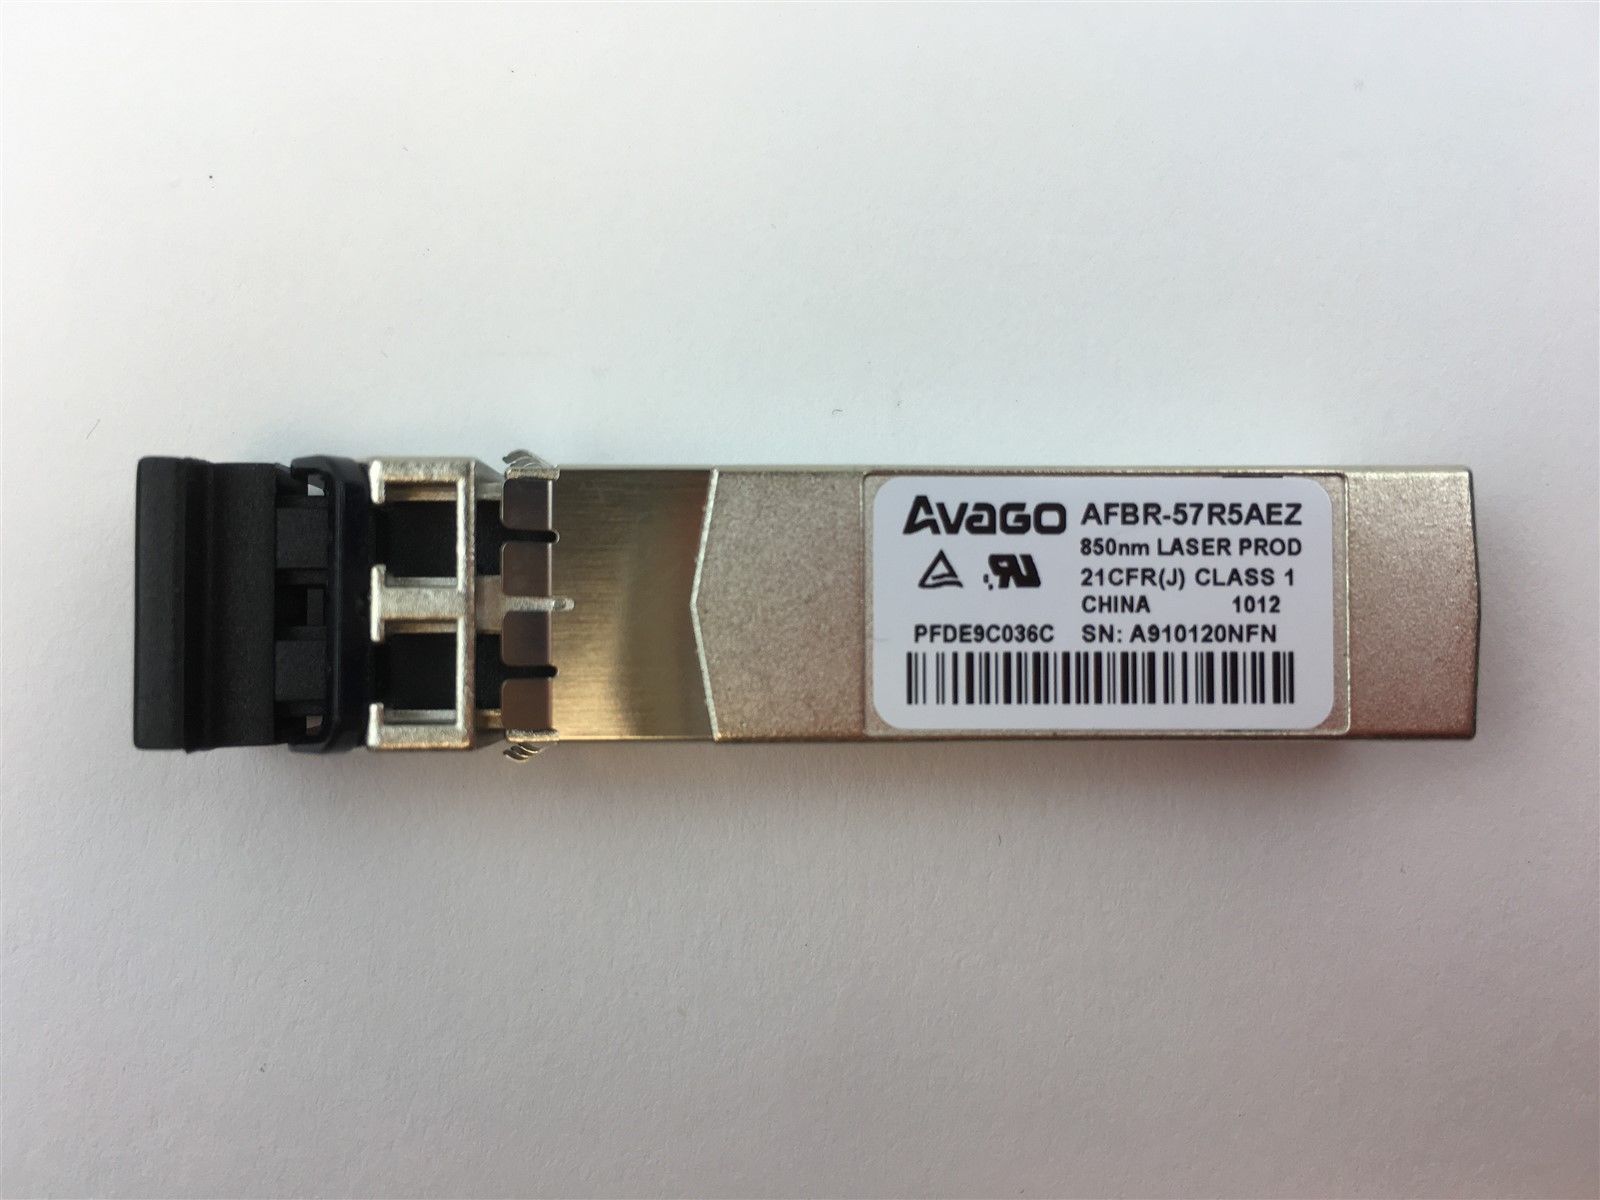 Genuine Avago 4GB GBIC SFP 850nm Transceiver PFDE9C036C AFBR-57R5AEZ